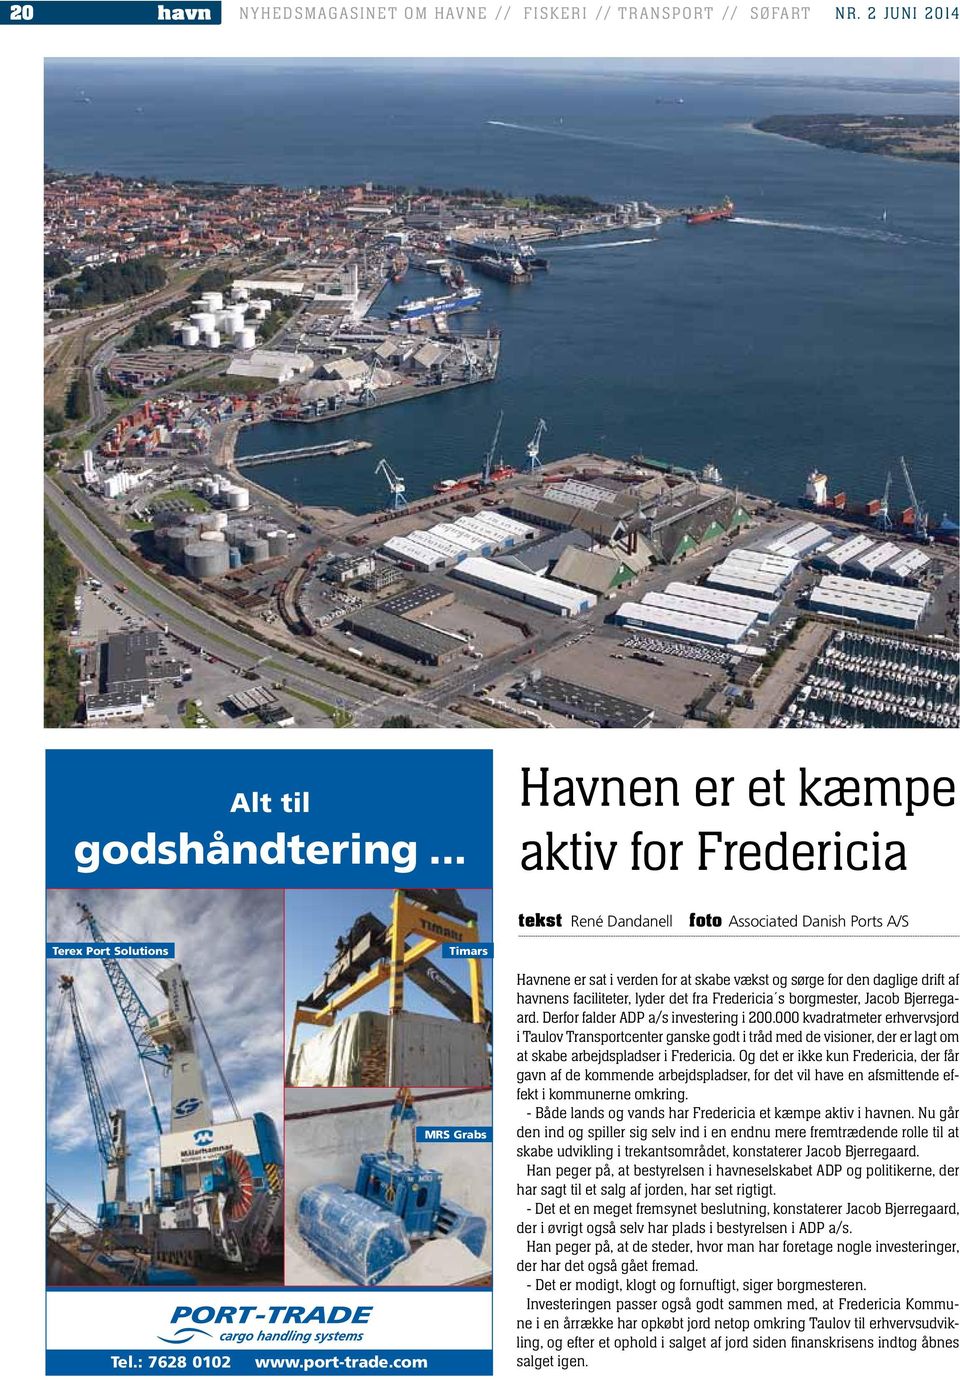 com Timars MRS Grabs Havnene er sat i verden for at skabe vækst og sørge for den daglige drift af havnens faciliteter, lyder det fra Fredericia s borgmester, Jacob Bjerregaard.